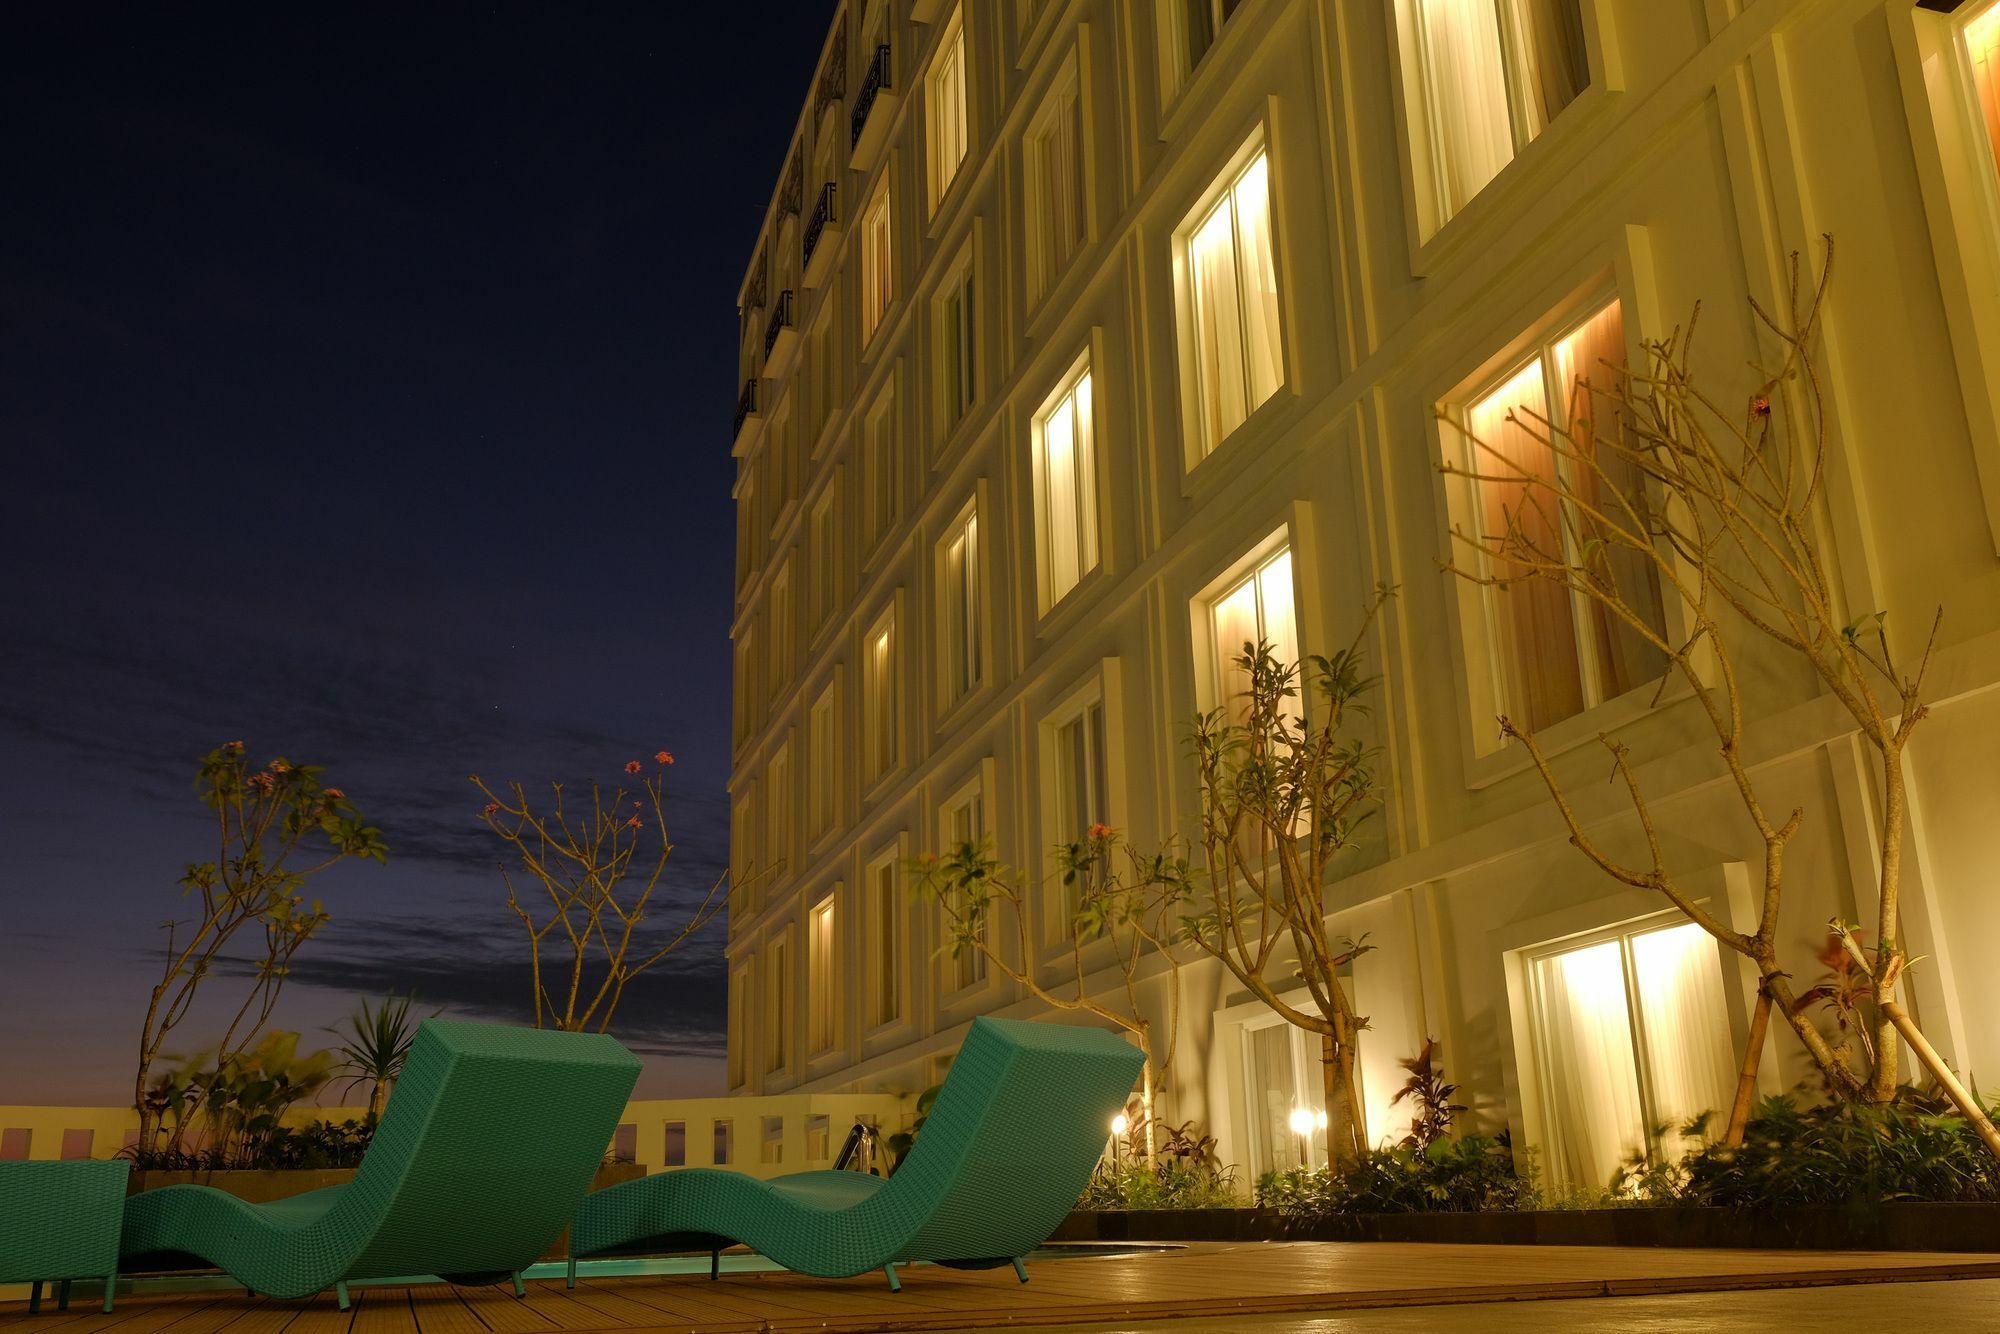 Grand Keisha Yogyakarta Hotel Exterior photo